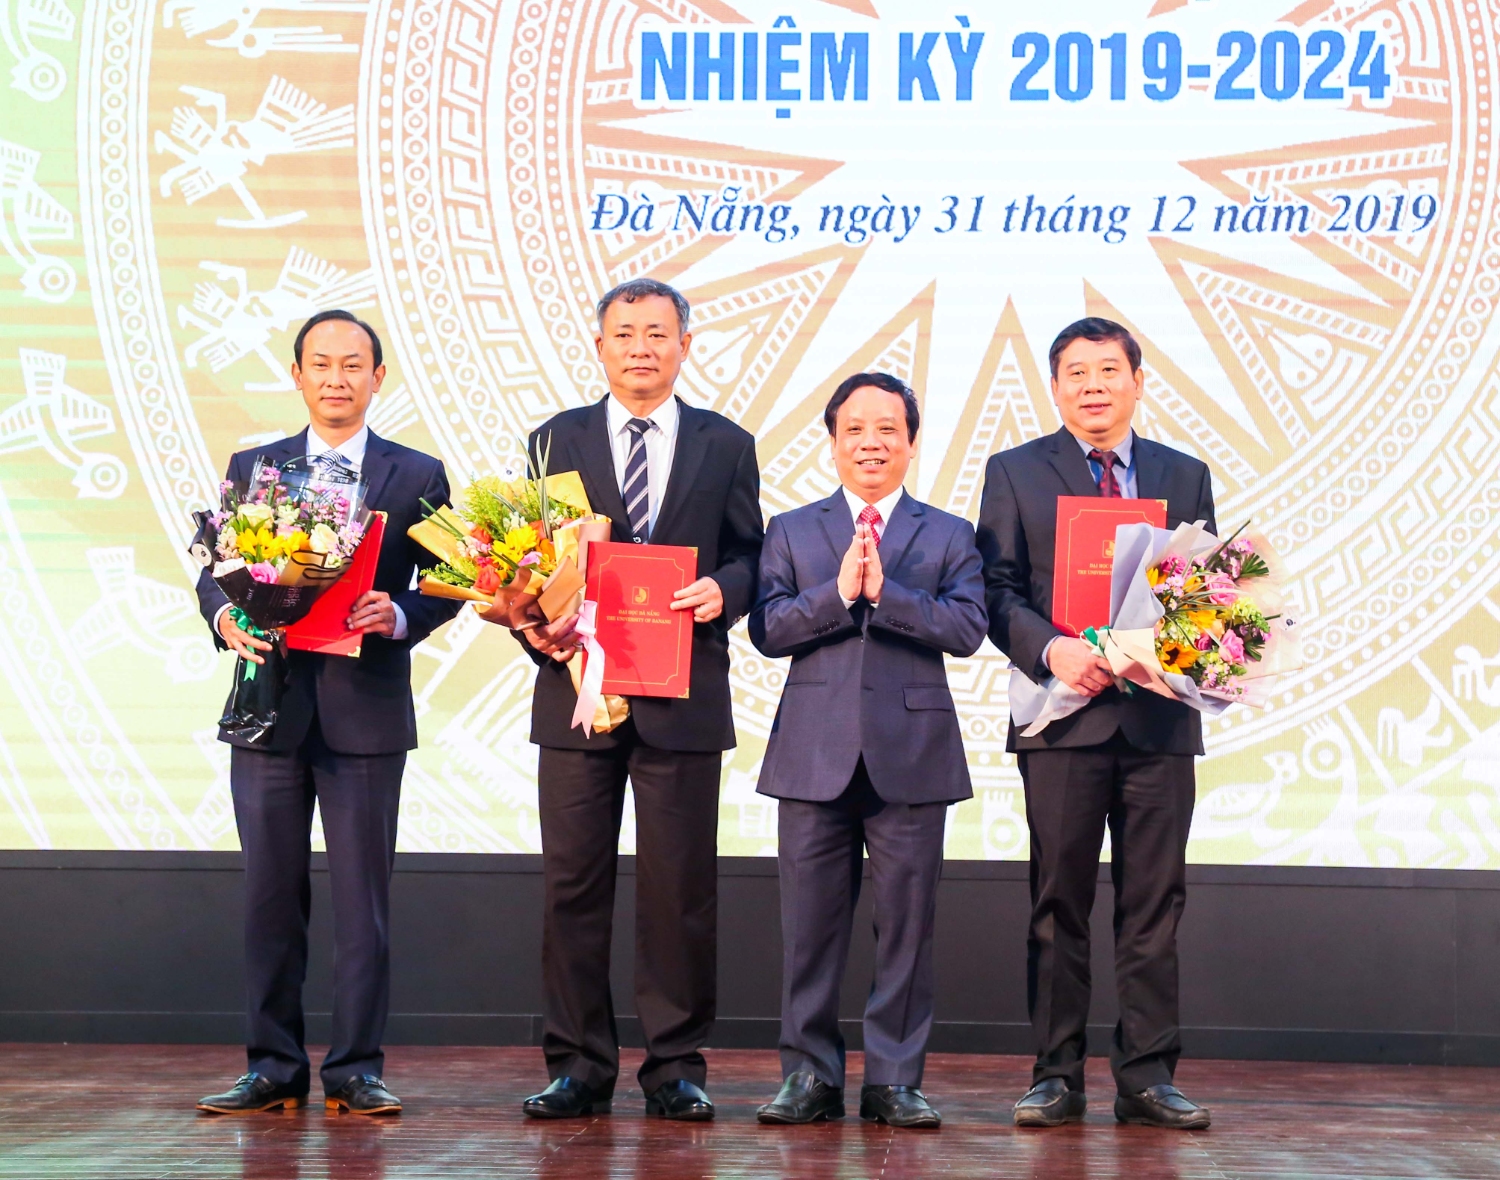 Trường Đại học Sư phạm: PGS.TS Lưu Trang tiếp tục đảm nhiệm chức vụ Hiệu trưởng nhiệm kỳ 2019 - 2024